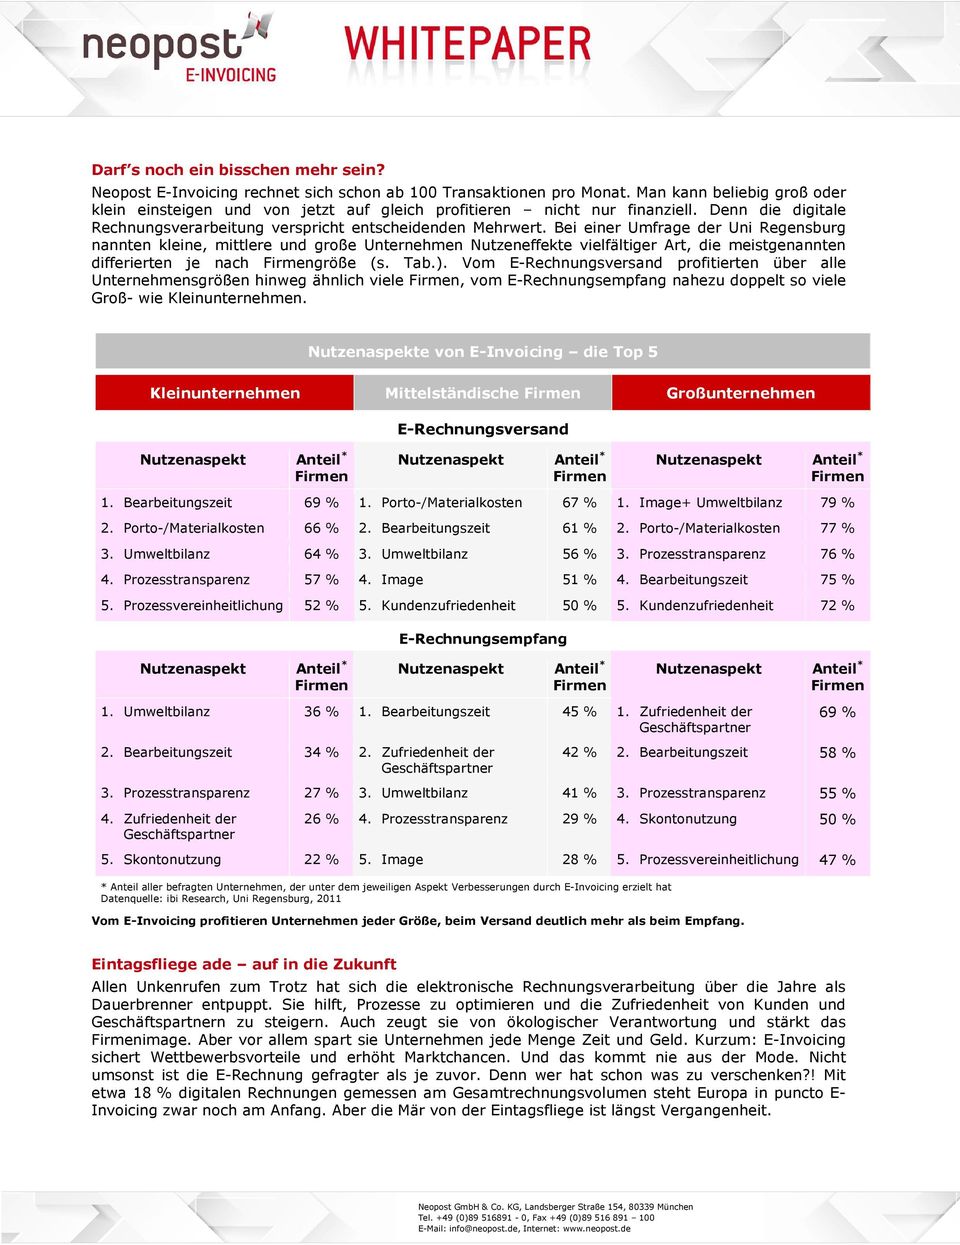 Bei einer Umfrage der Uni Regensburg nannten kleine, mittlere und große Unternehmen Nutzeneffekte vielfältiger Art, die meistgenannten differierten je nach größe (s. Tab.).